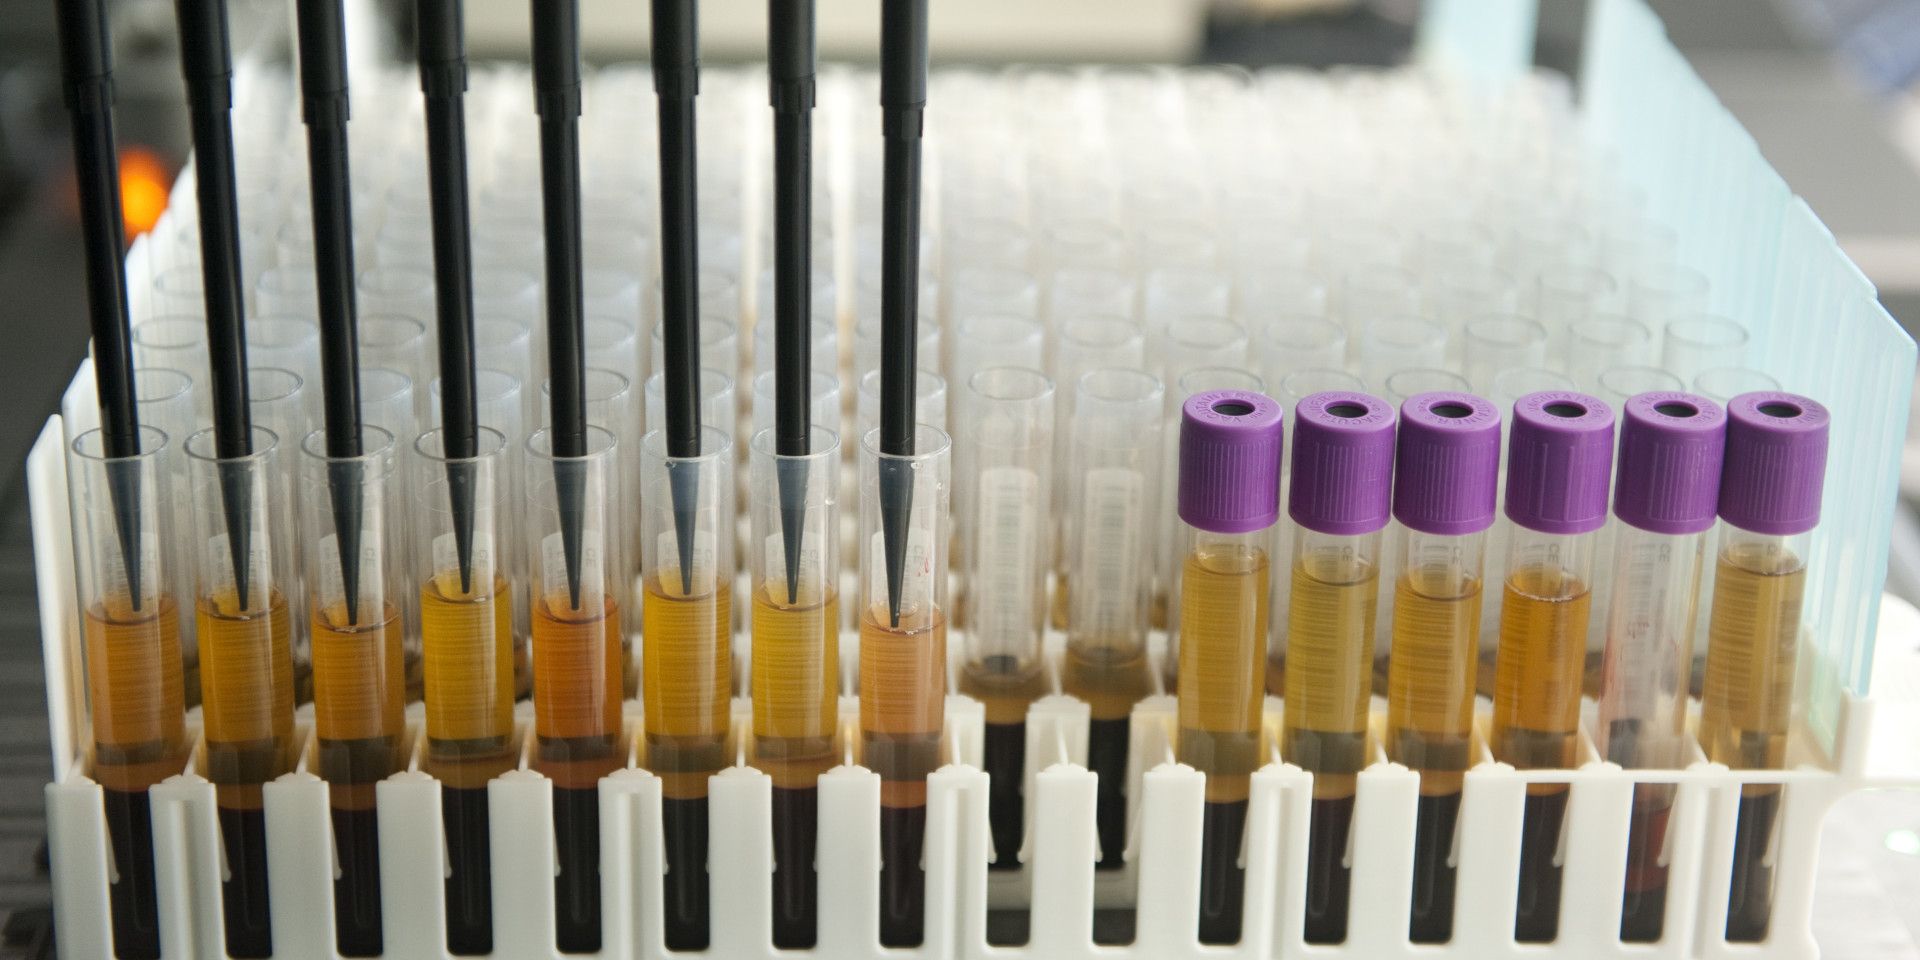 urine samples laboratorium